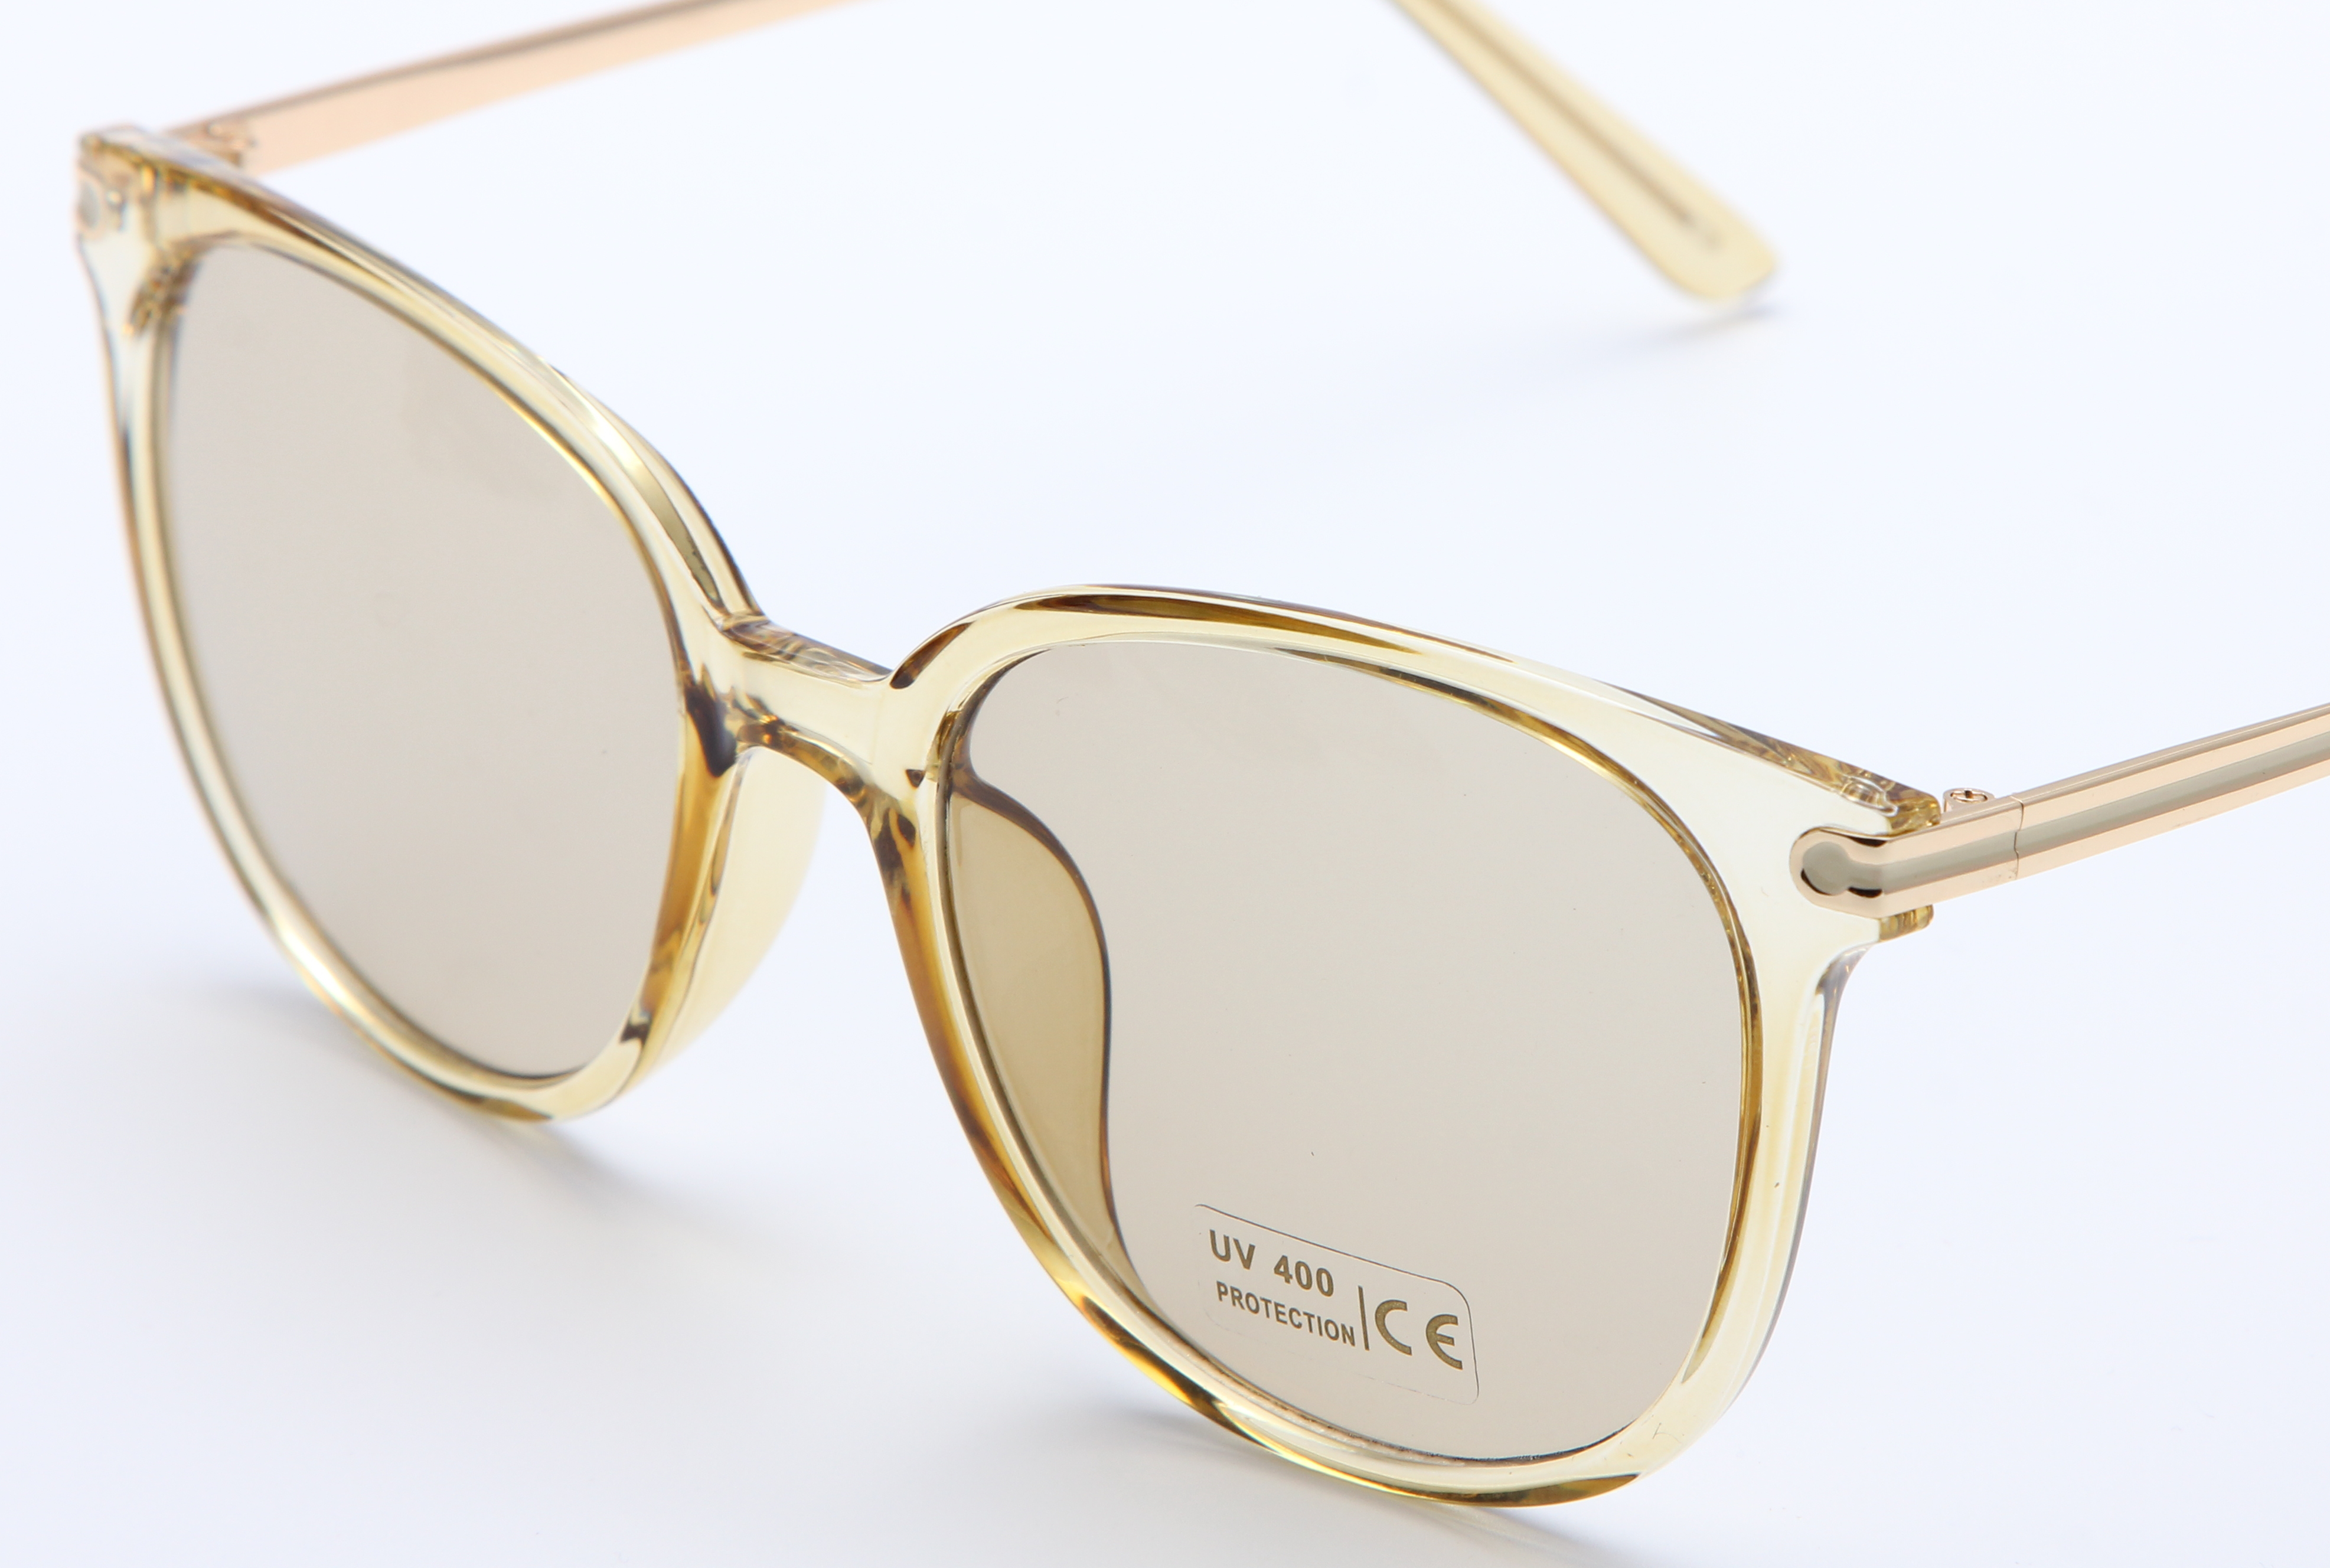 新款高档时尚太阳镜UV400镜片防紫外线眼镜防晒镜产品图